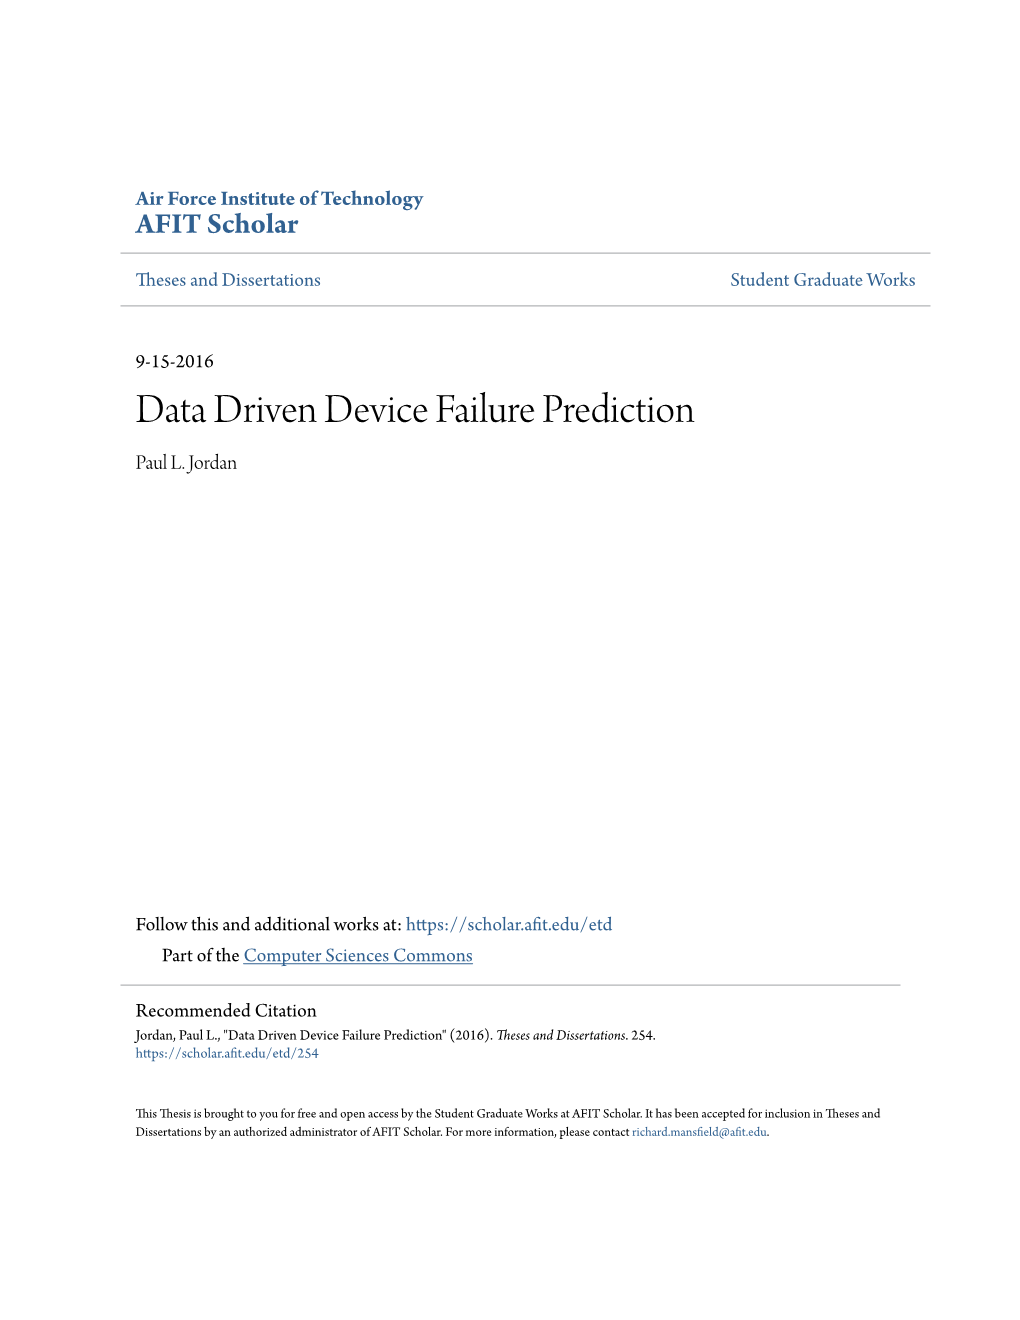 Data Driven Device Failure Prediction Paul L